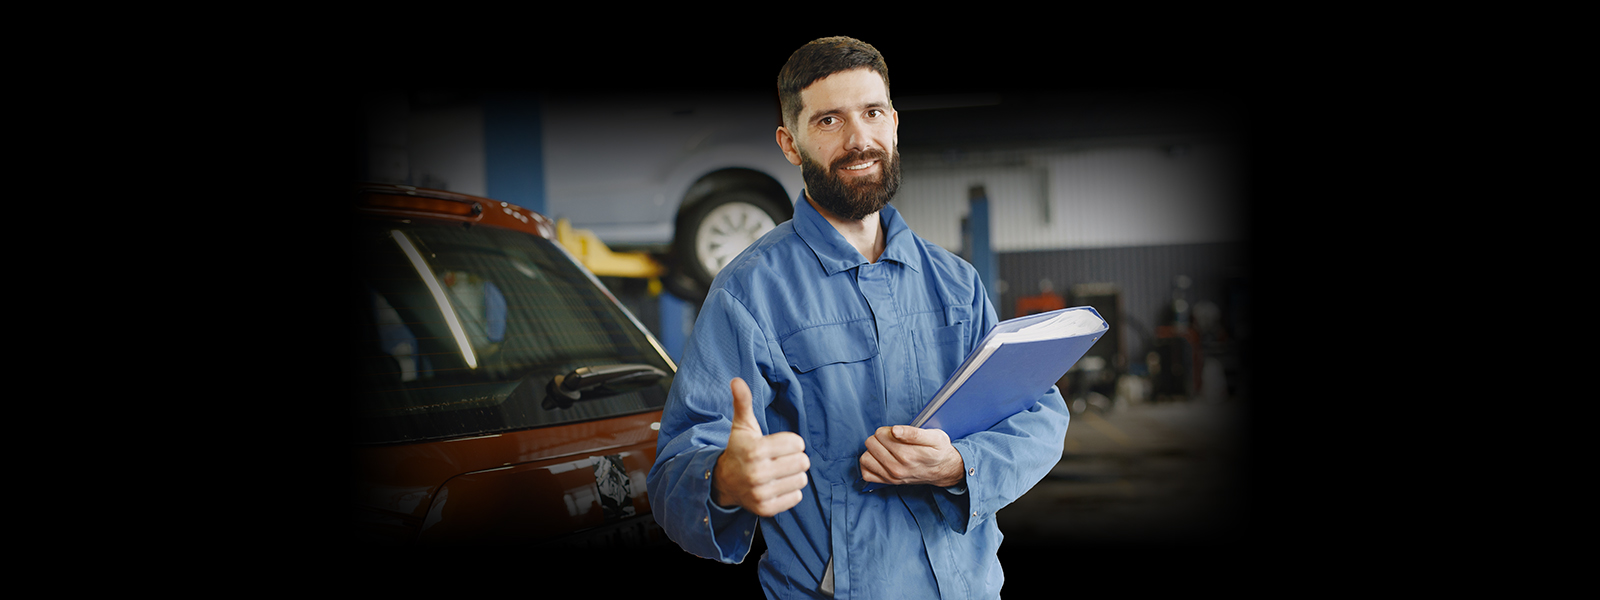 your full-service automotive repair shop